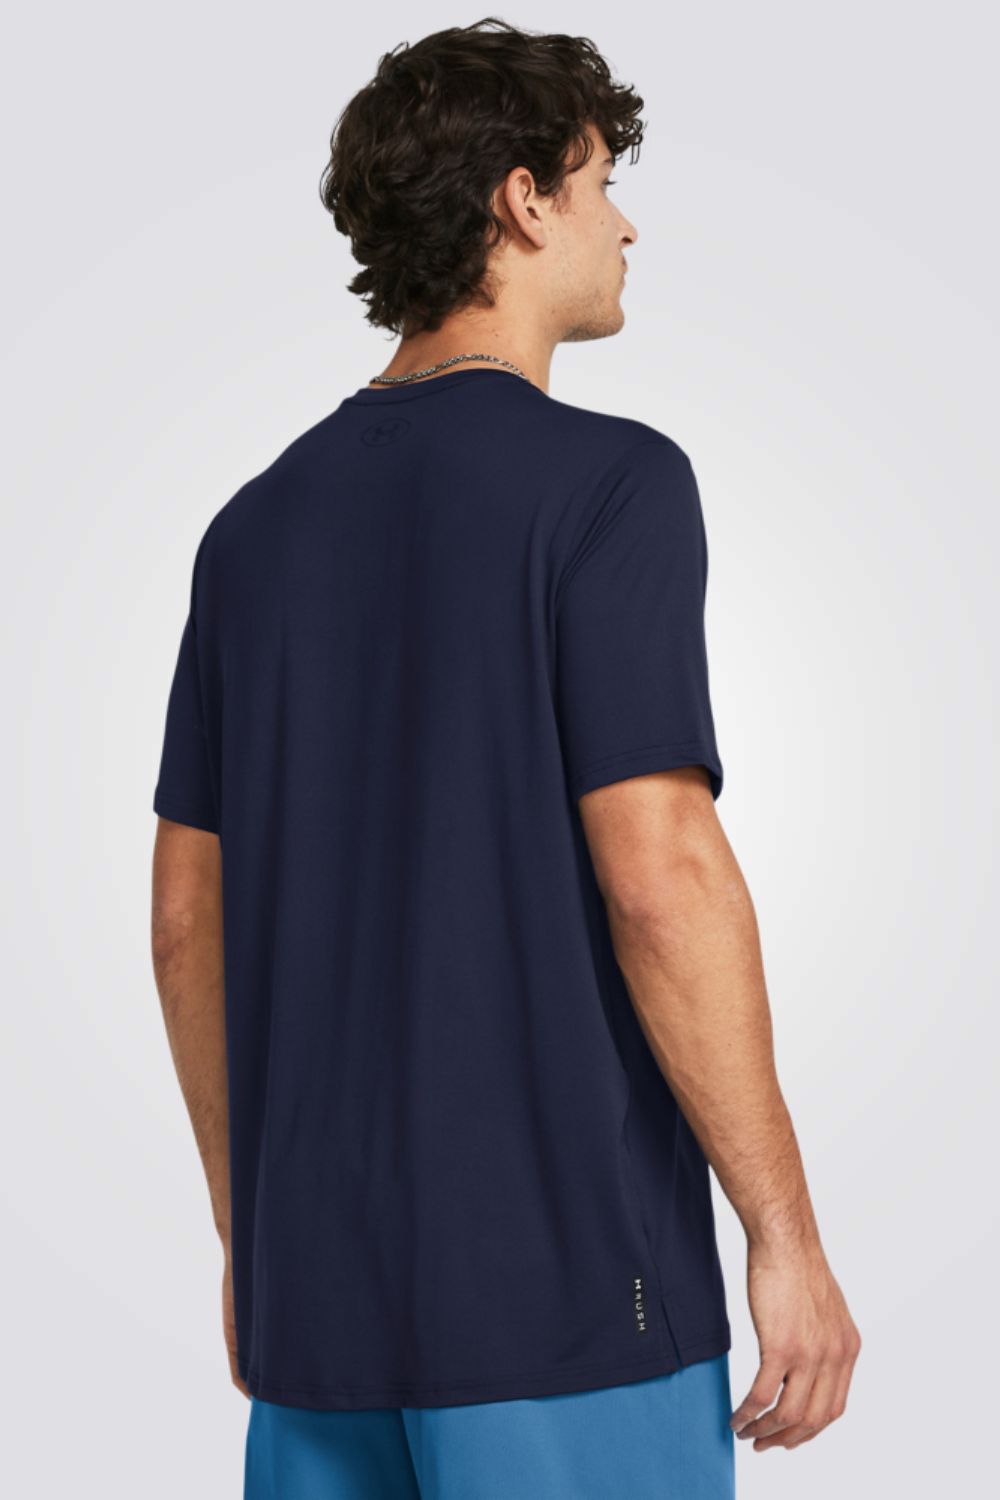 חולצה מבית המותג UNDER ARMOUR , עשויה מבד מנדף זיעה ששומר על הגוף שלך מאורר לאורך האימון